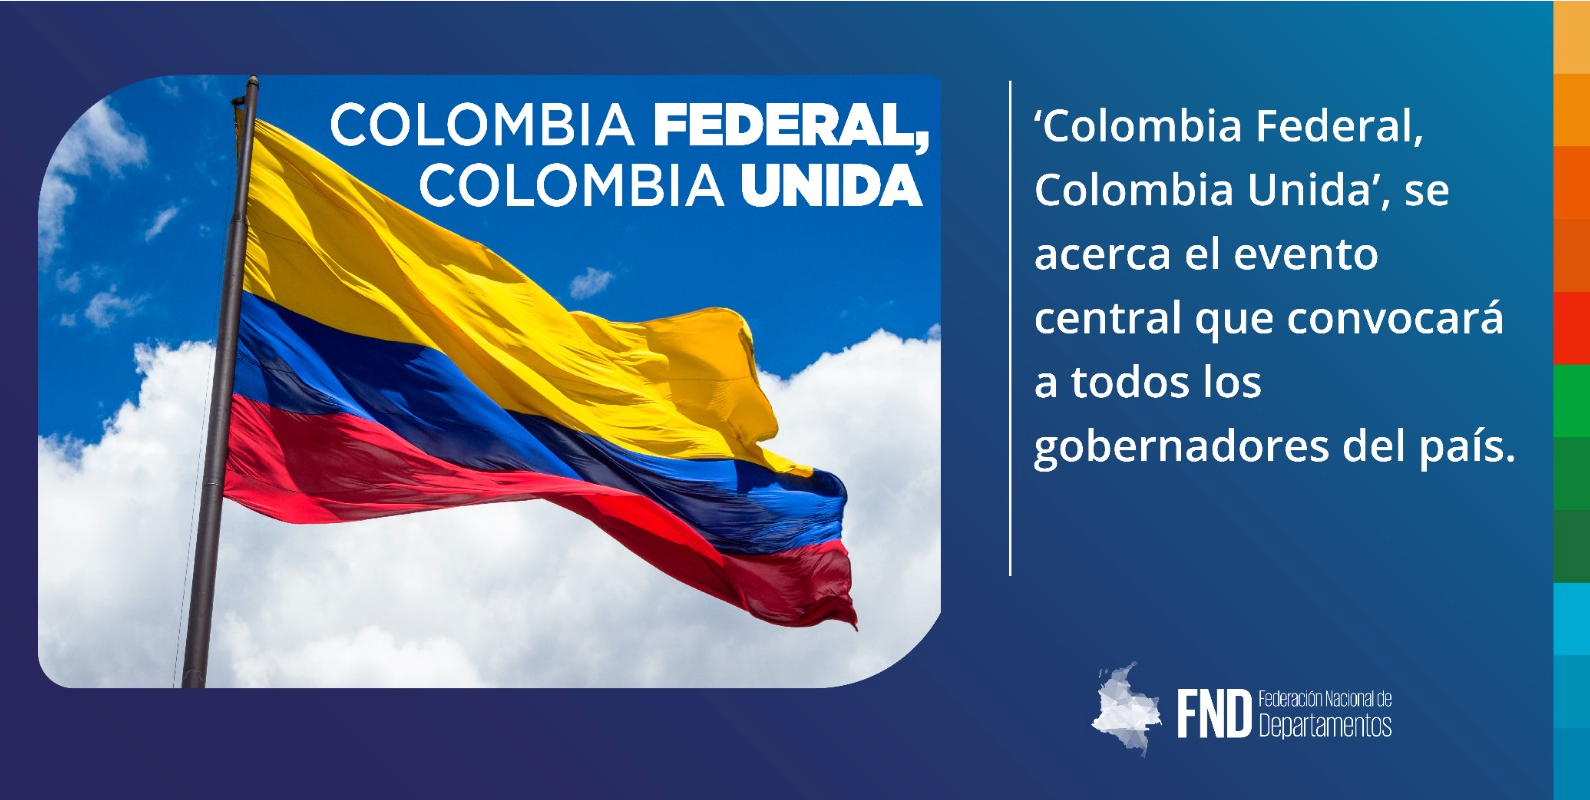 image  ‘Colombia Federal, Colombia Unida’, se acerca el evento central que convocará a todos los gobernadores del país